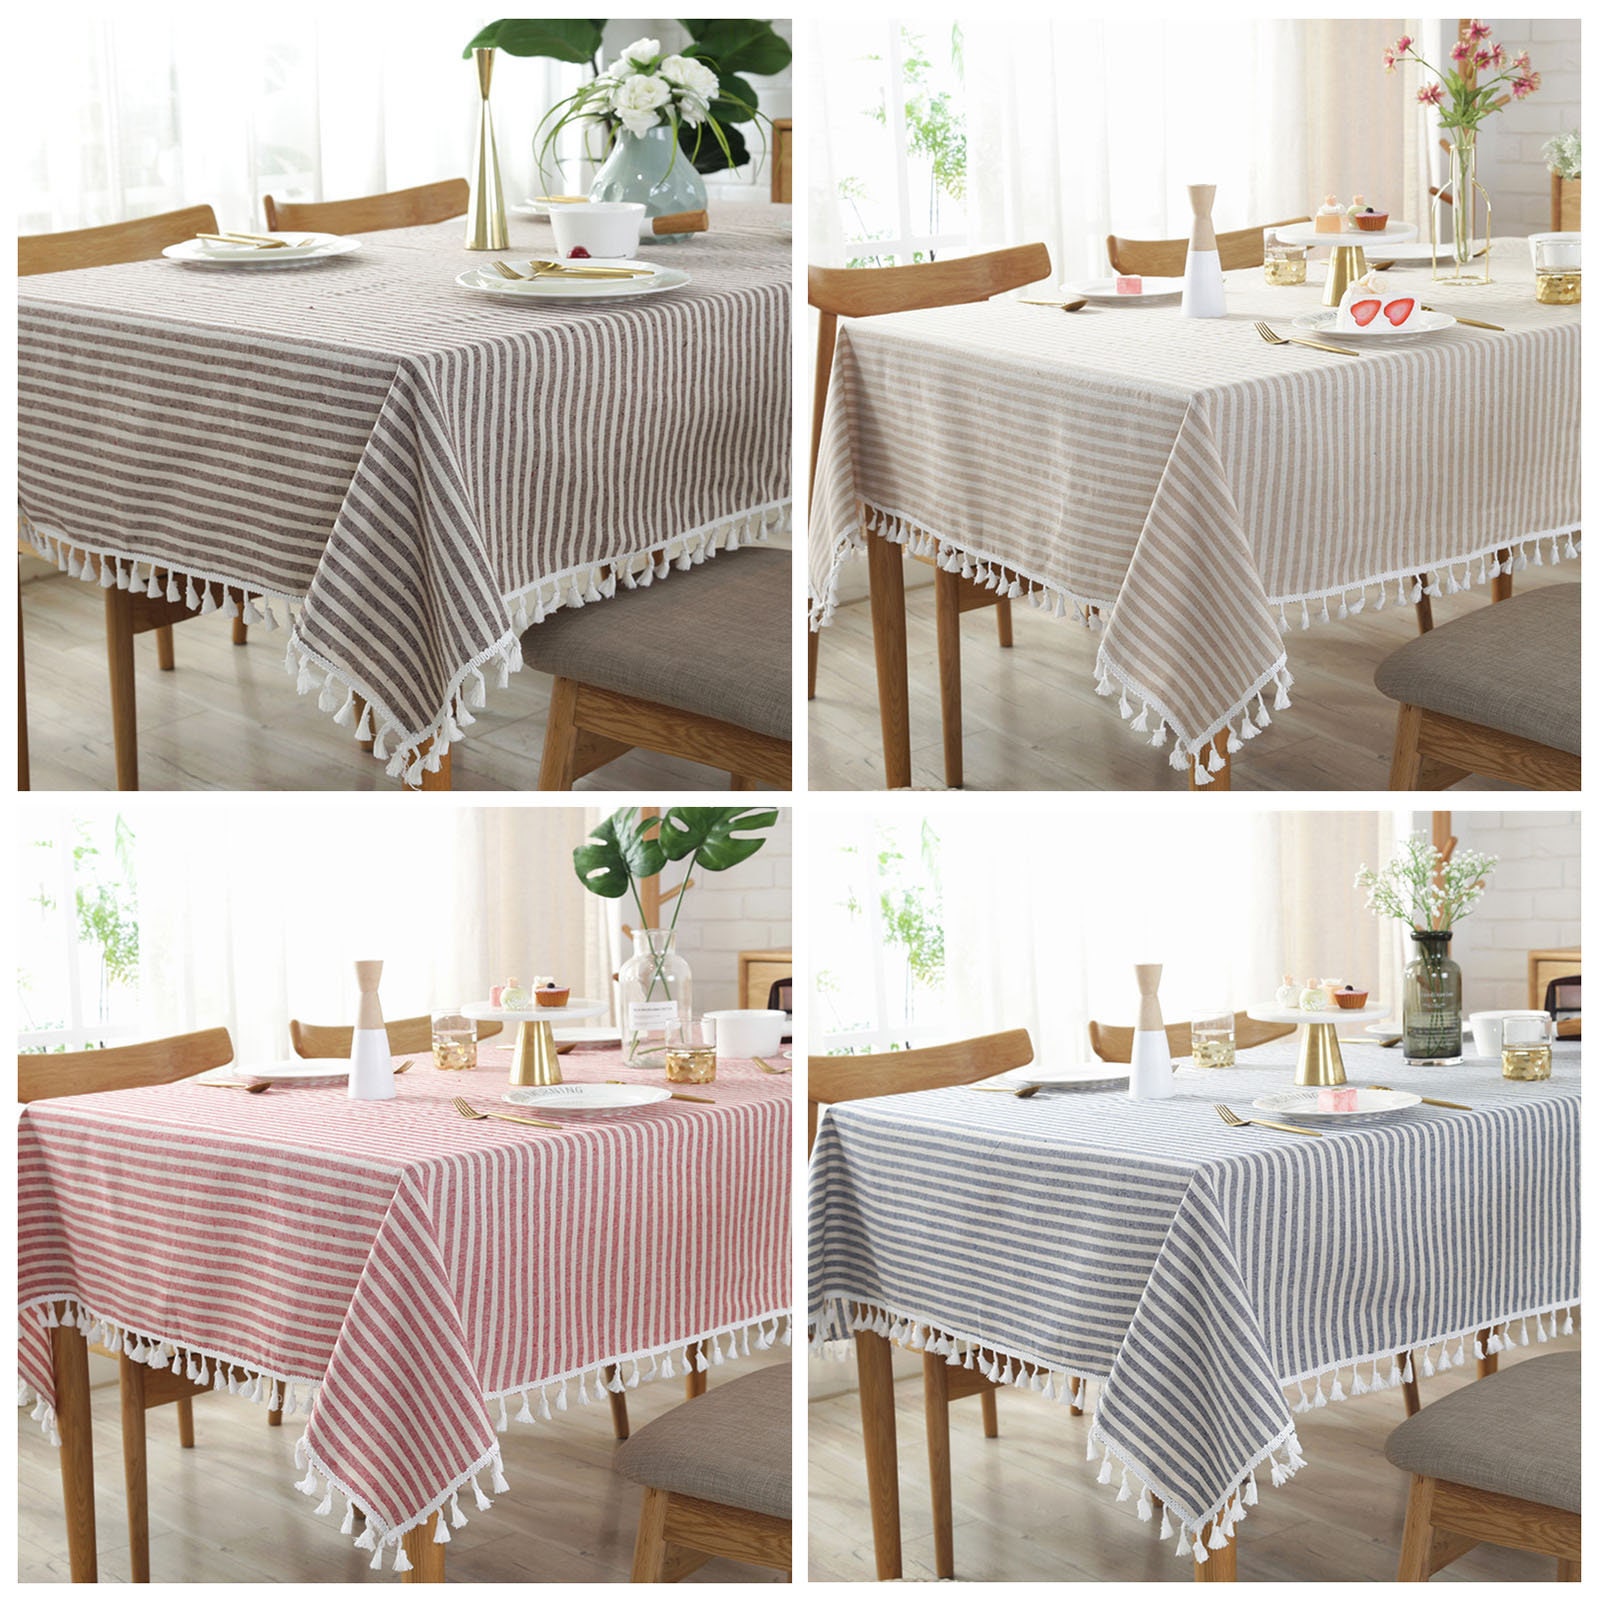 4 Couleurs Stripe Linen Cotton Table Cloth avec Glands, Superpositions de Table, Draps Fête d'annive